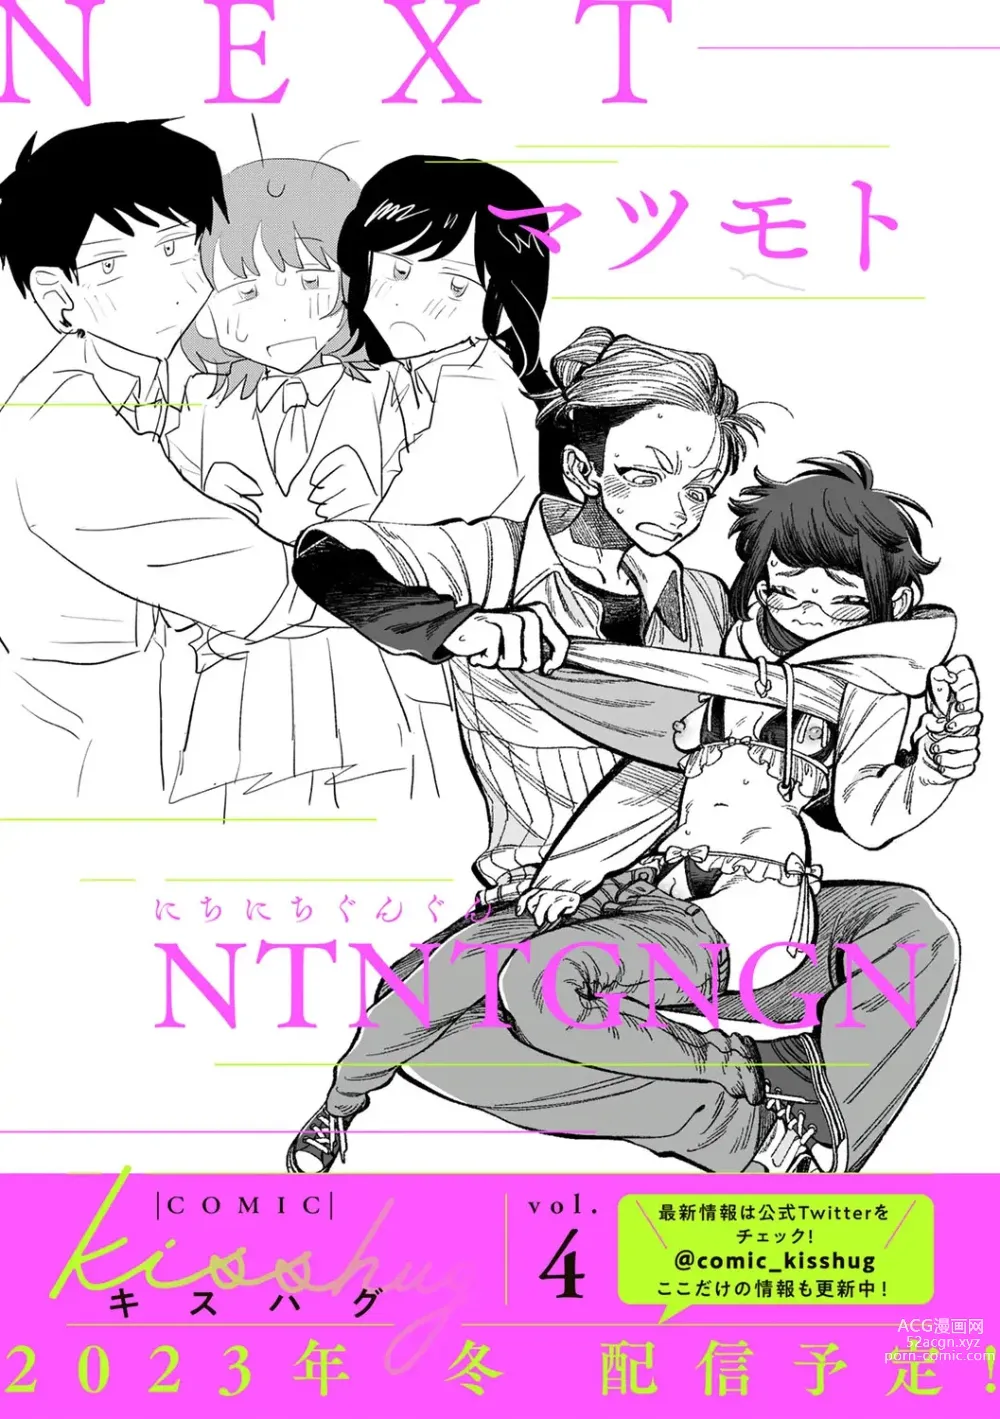 Page 197 of manga COMIC kisshug vol.3